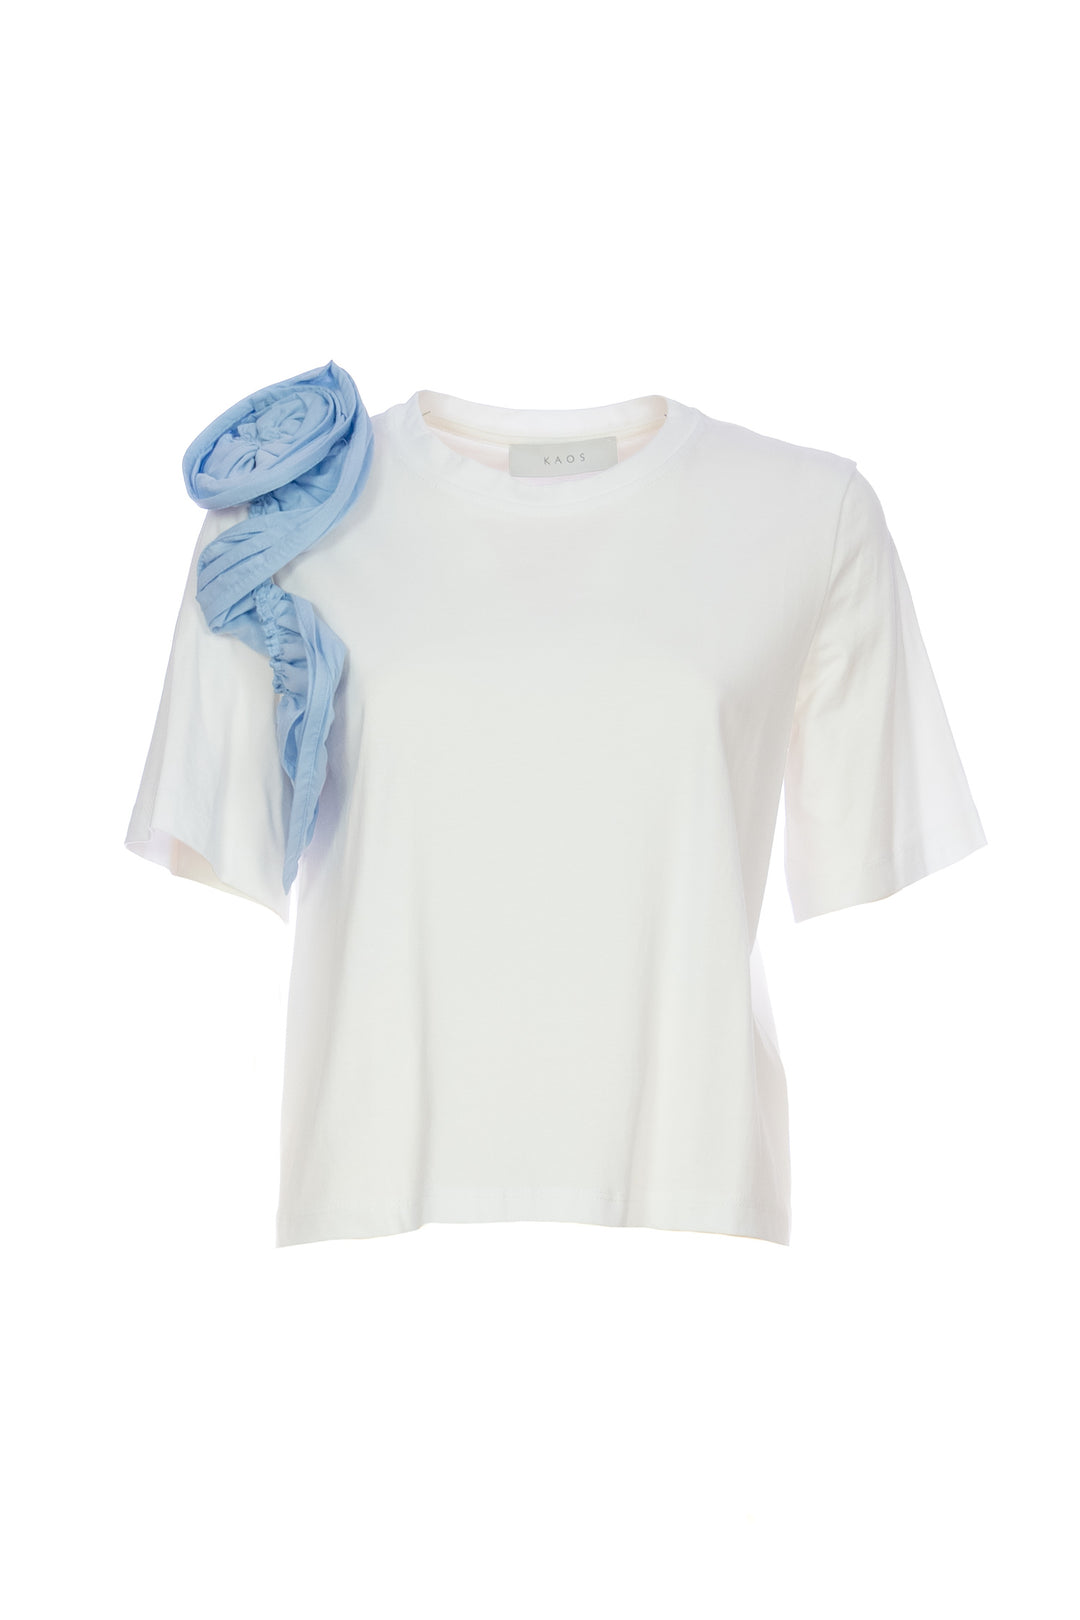 KAOS T-shirt bianca in cotone con volant azzurro - Mancinelli 1954